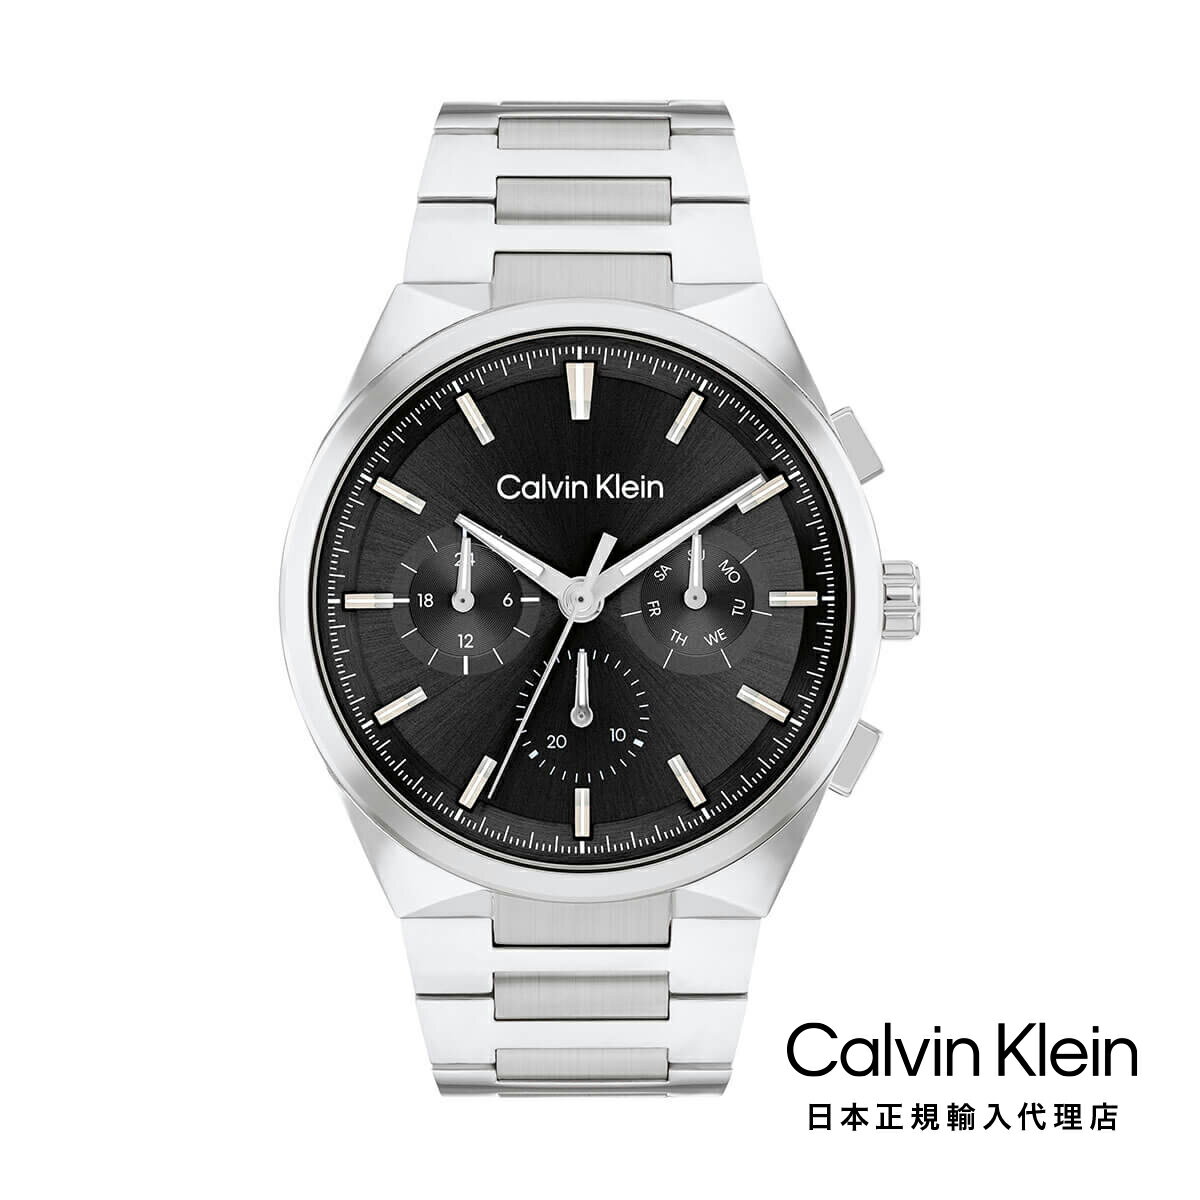 Calvin Klein / カルバンクライン ディスティングウィッシュ - 44MM マルチファンクション ブラック シルバー ブレスレット